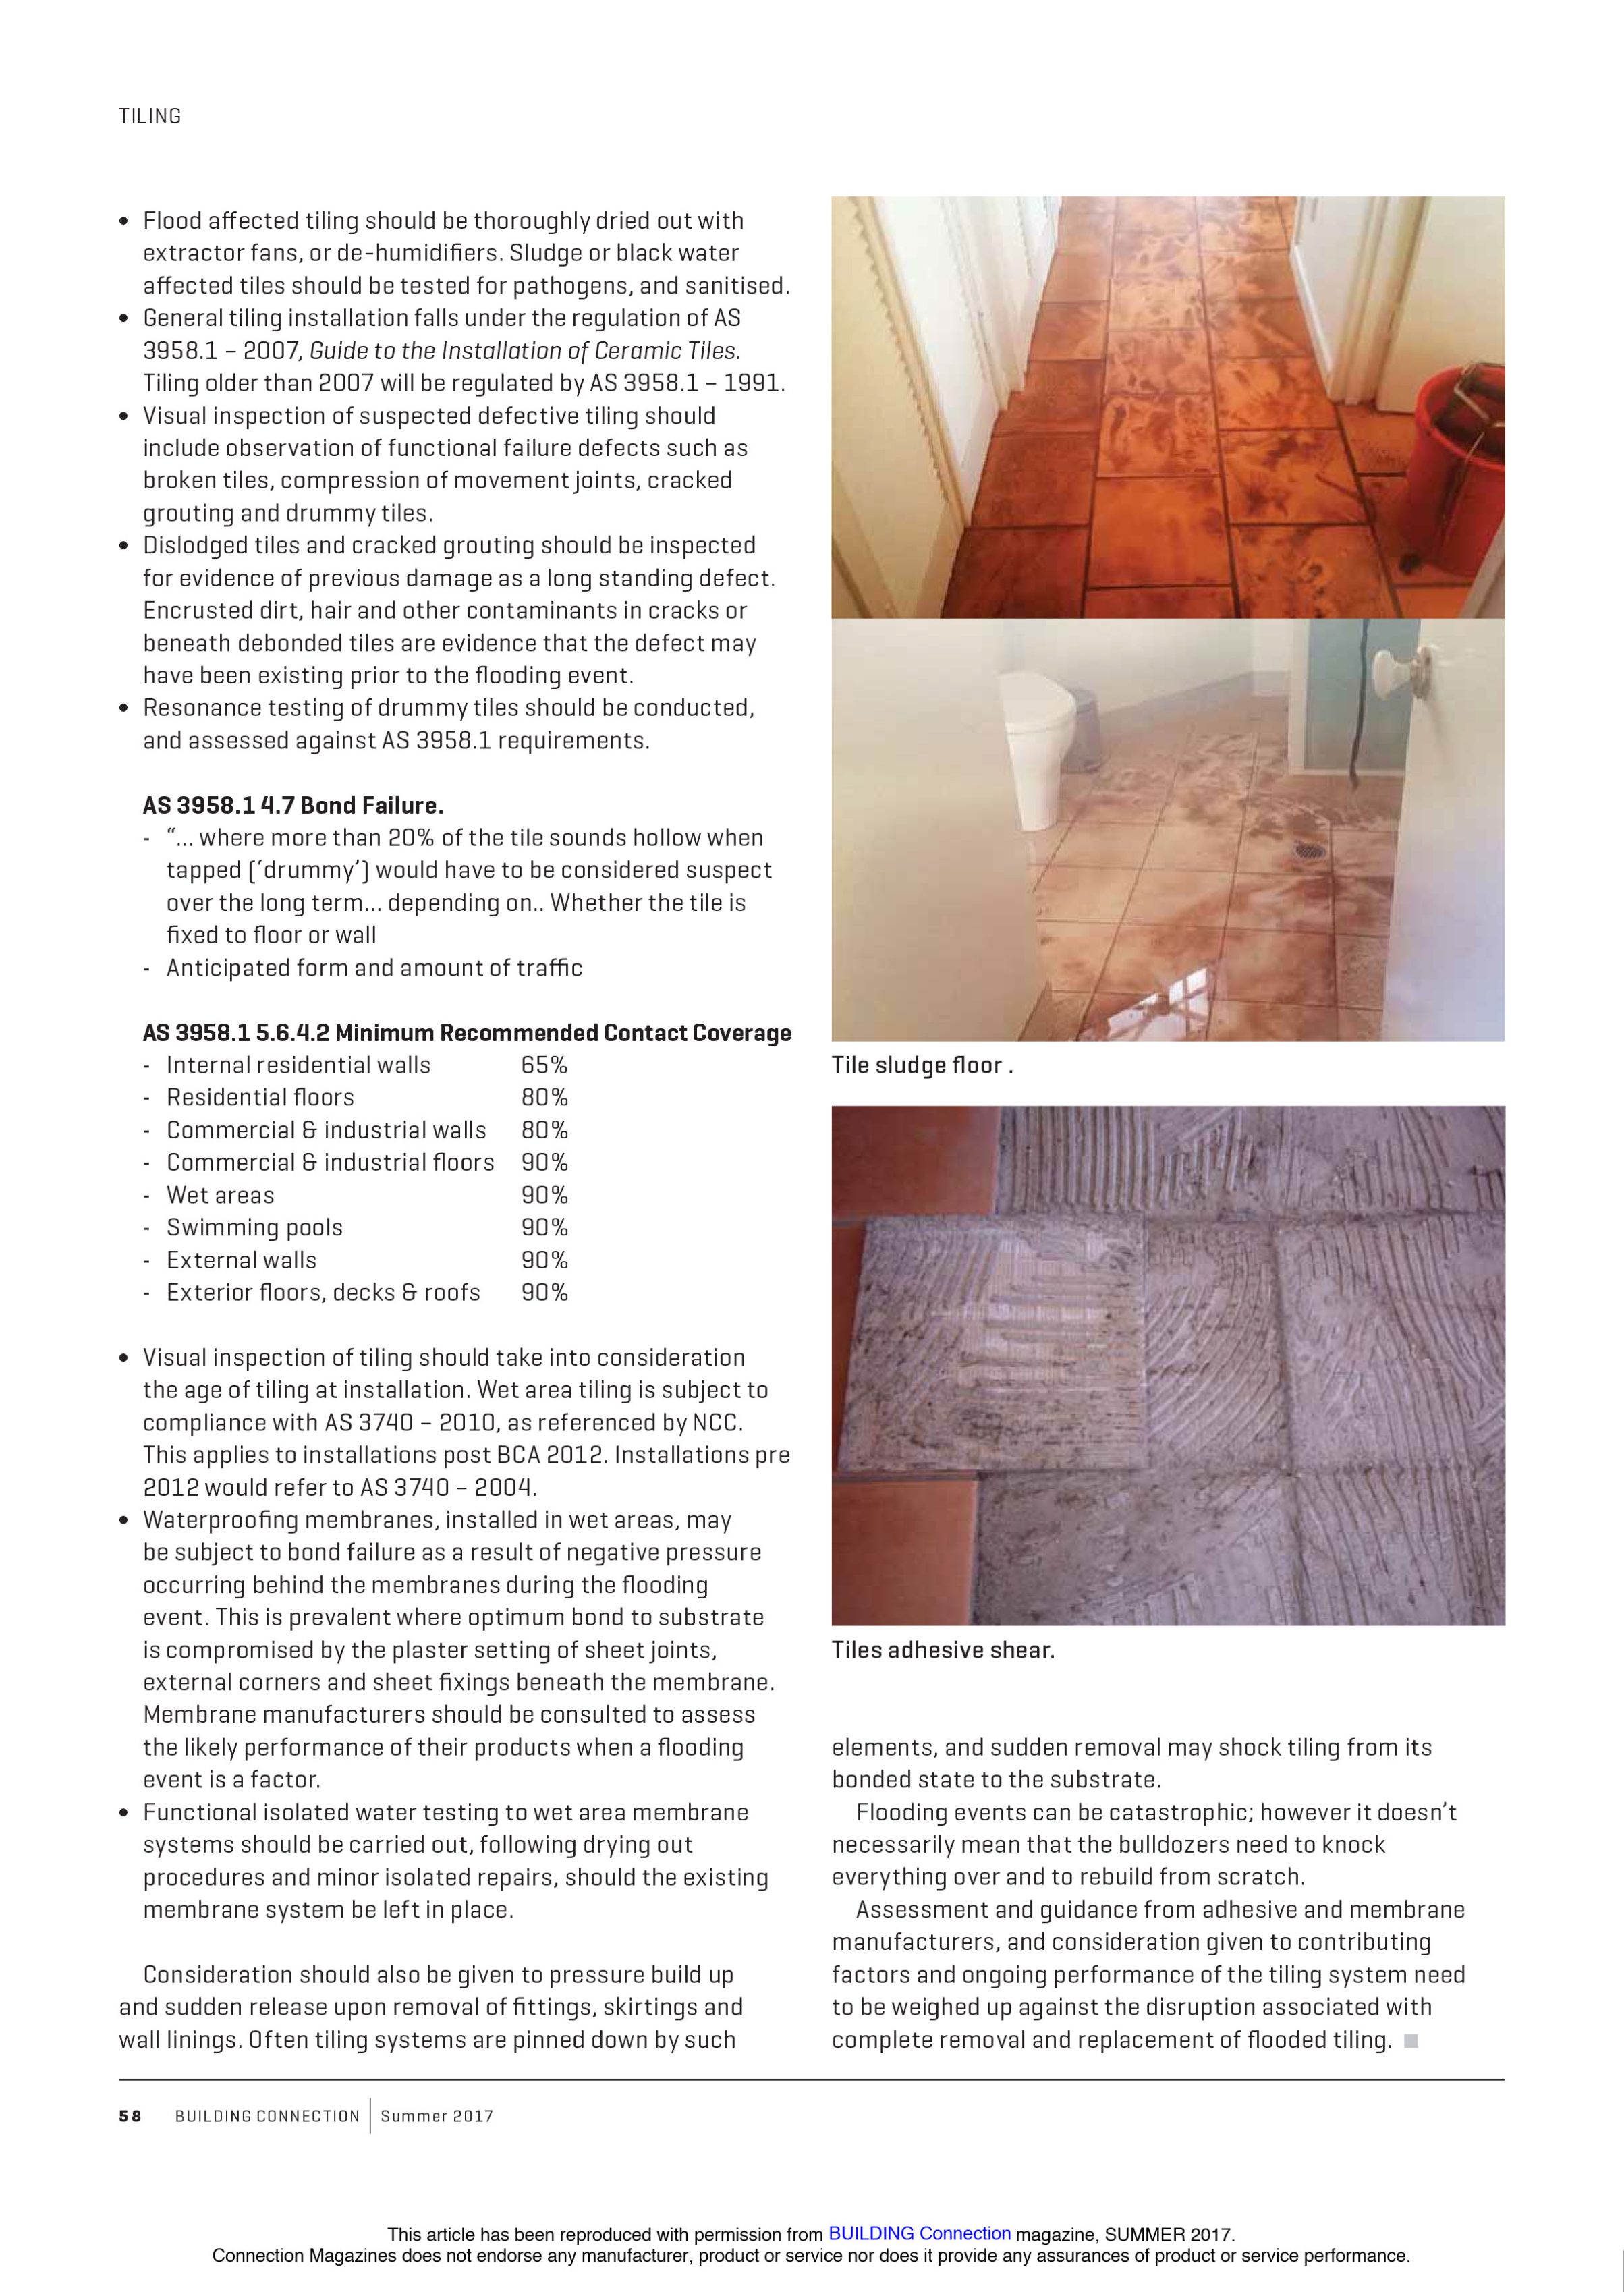 tiling factsheet